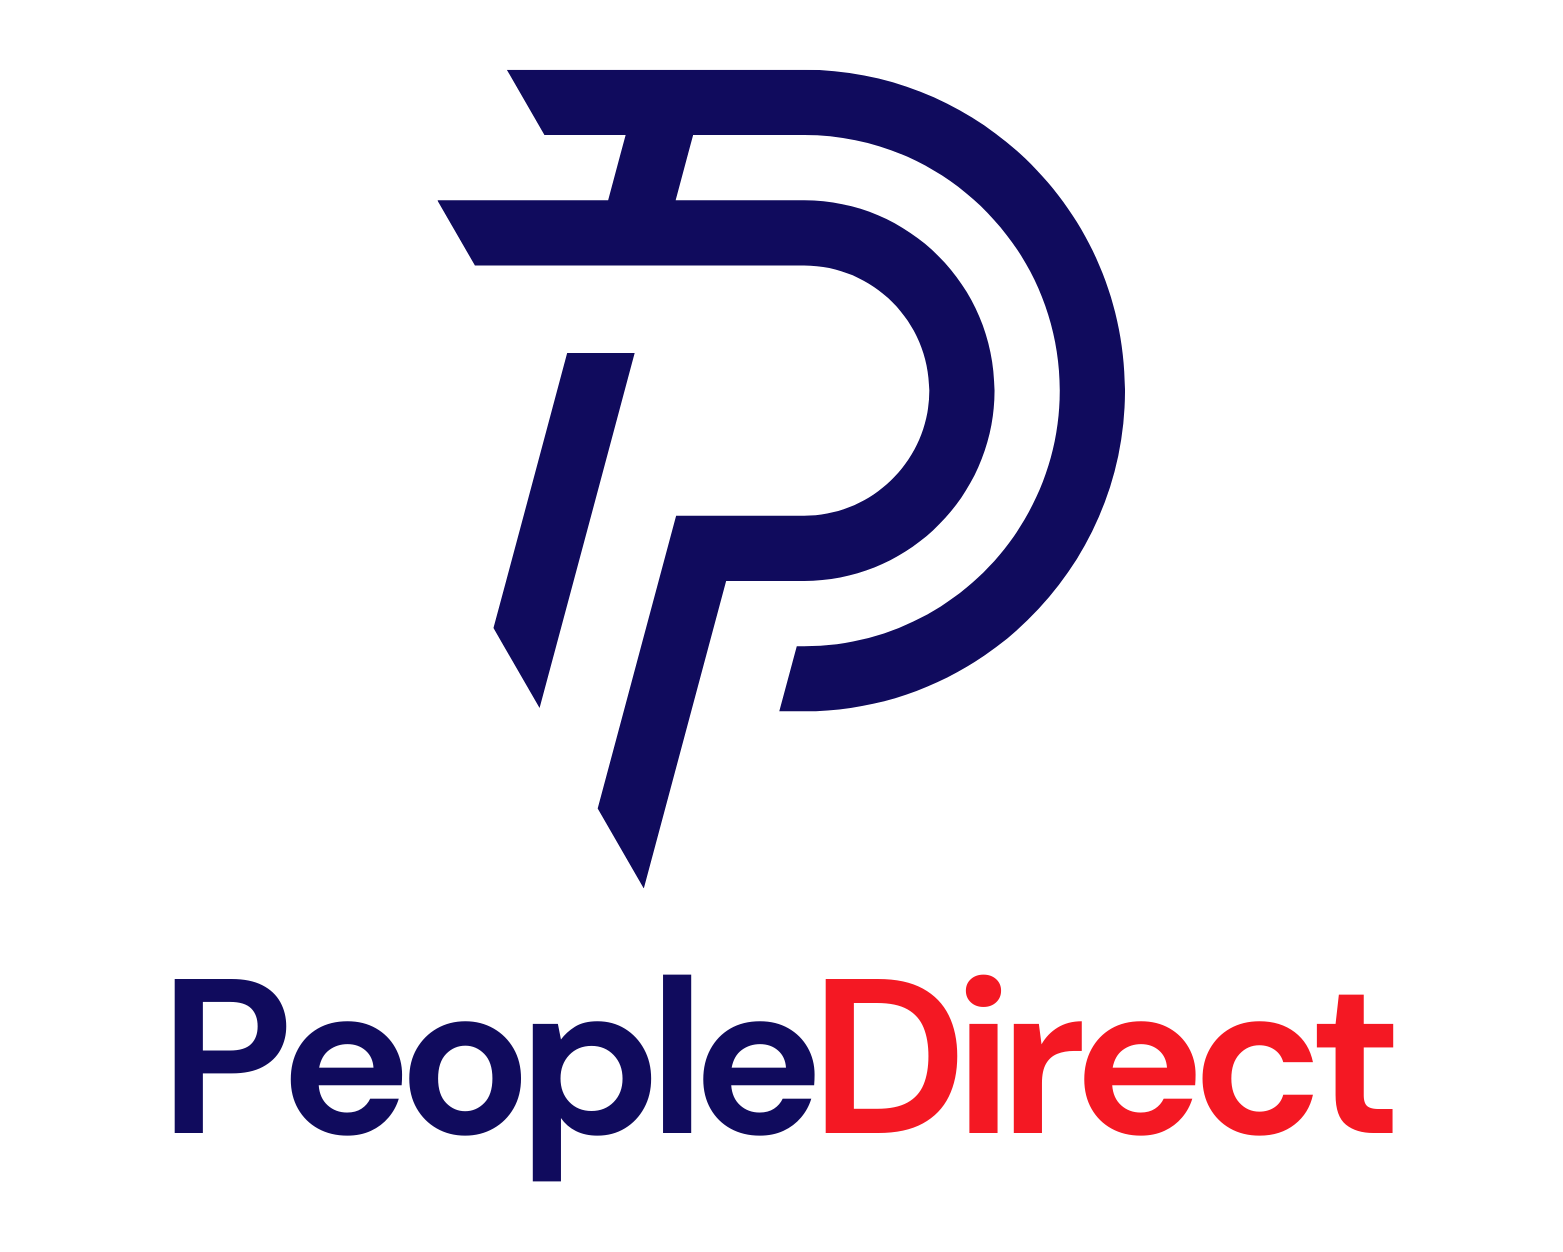 PeopleDirect